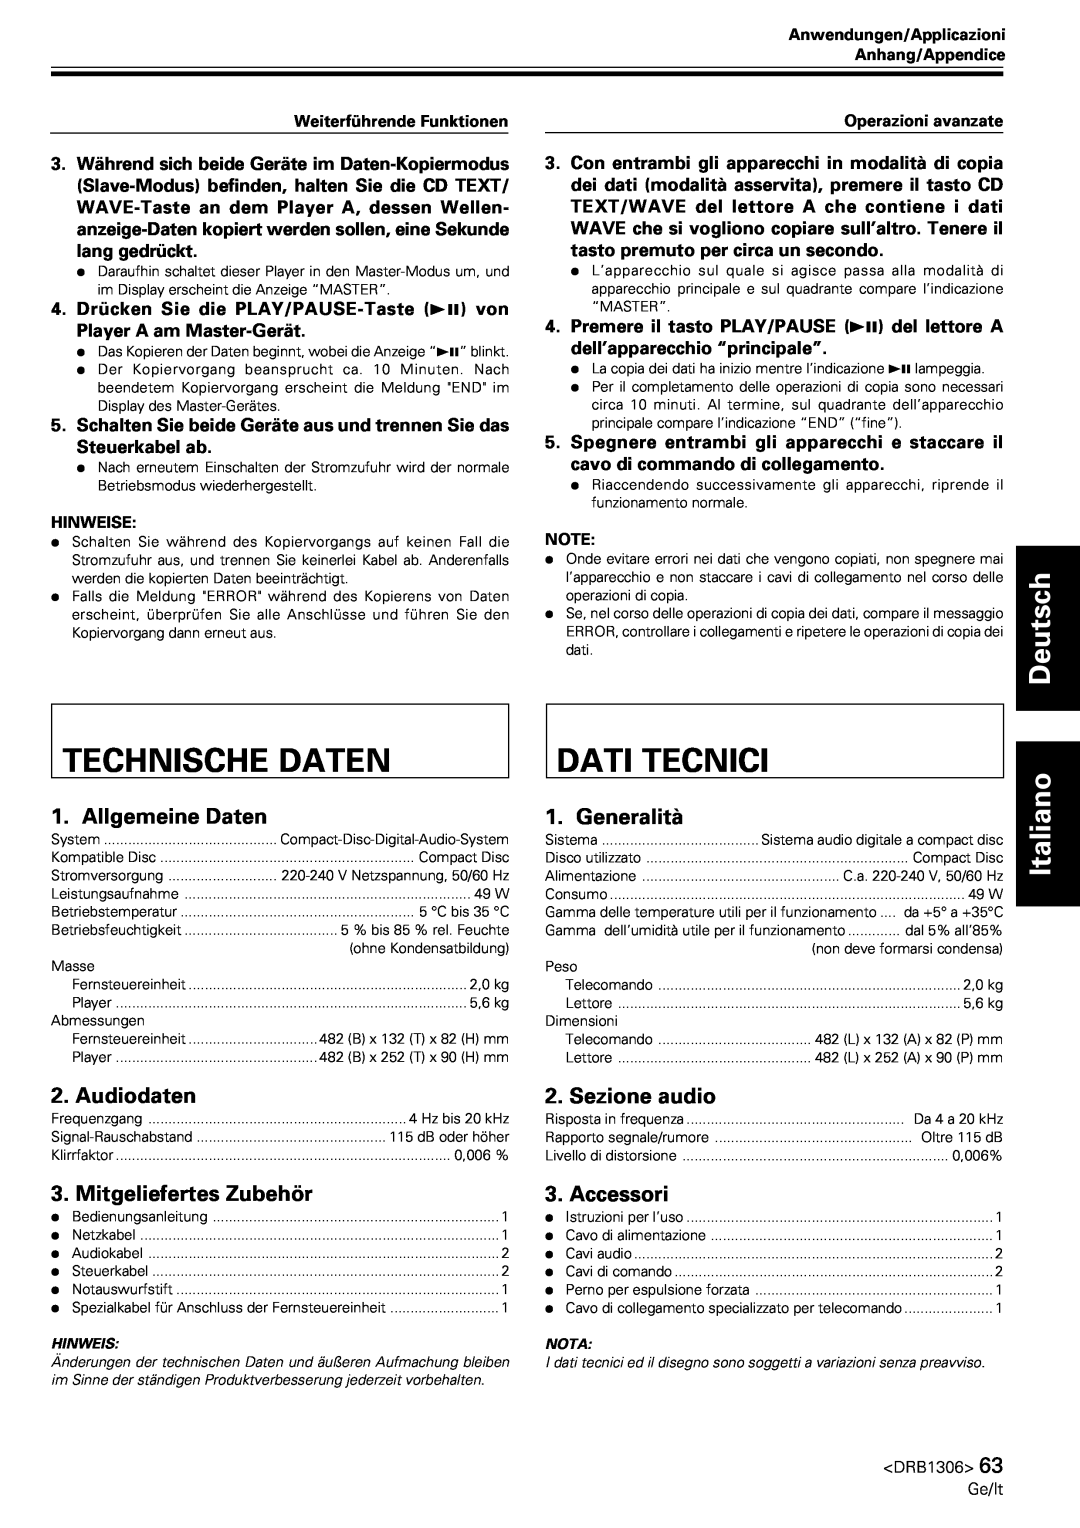 Pioneer CMX-3000 Technische Daten, Dati Tecnici, Allgemeine Daten, Generalità, Audiodaten, Sezione audio, Accessori 